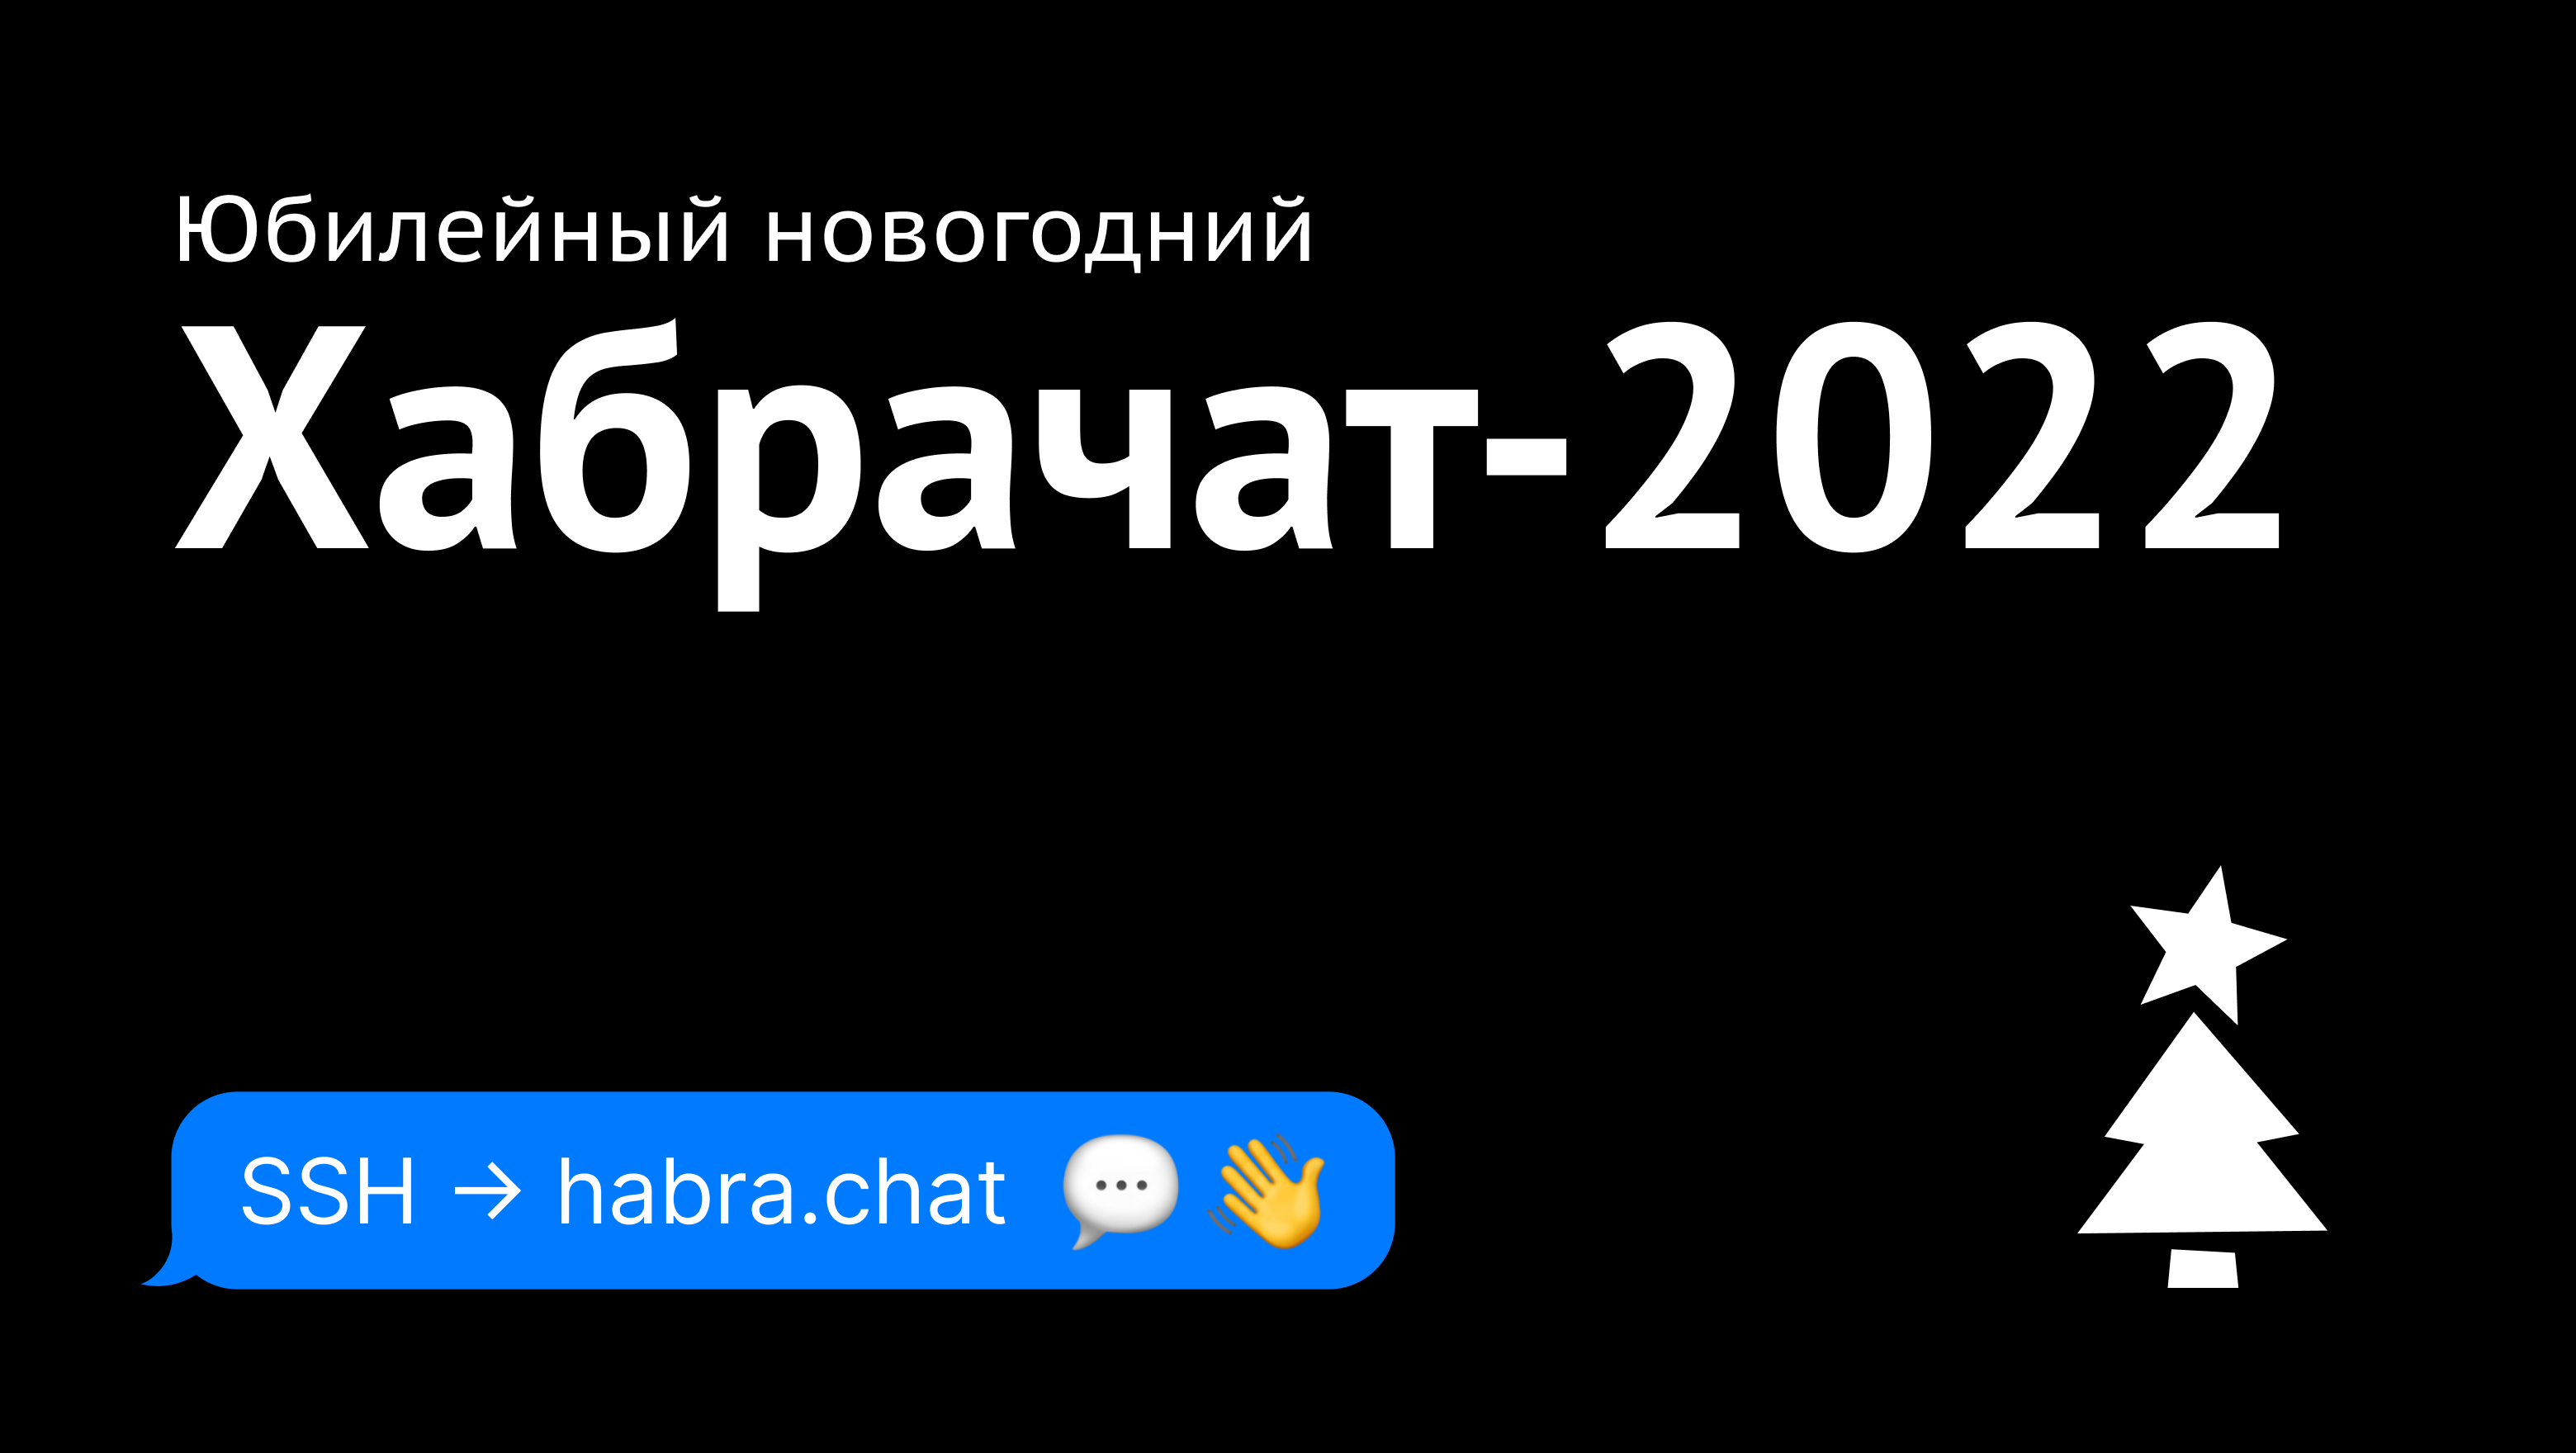 Юбилейный новогодний Хабрачат-2022 - 1